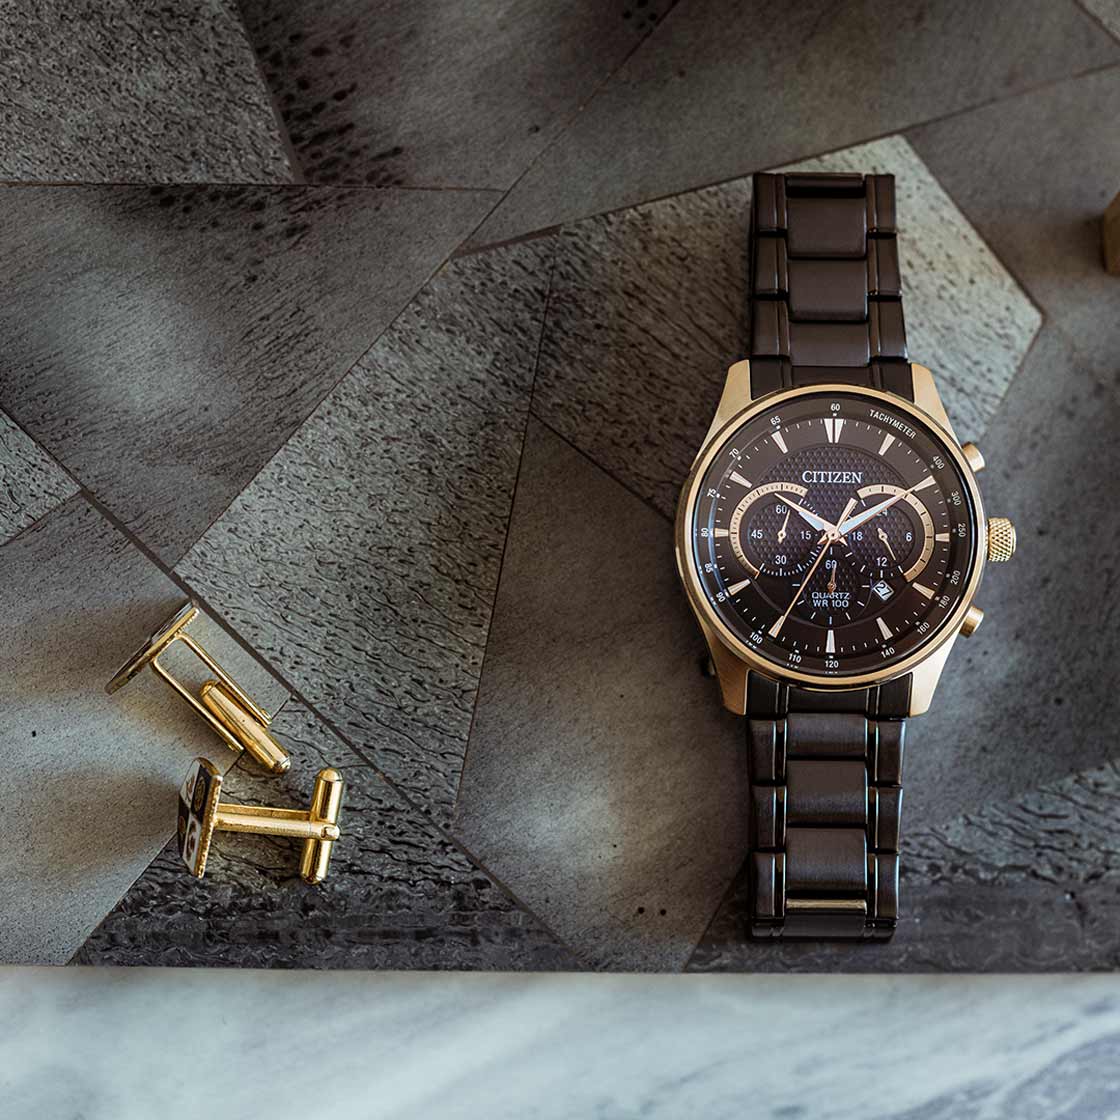 שעון יד לגבר Citizen AN8196-55E 42mm - צבע שחור אחריות לשנה ע"י היבואן